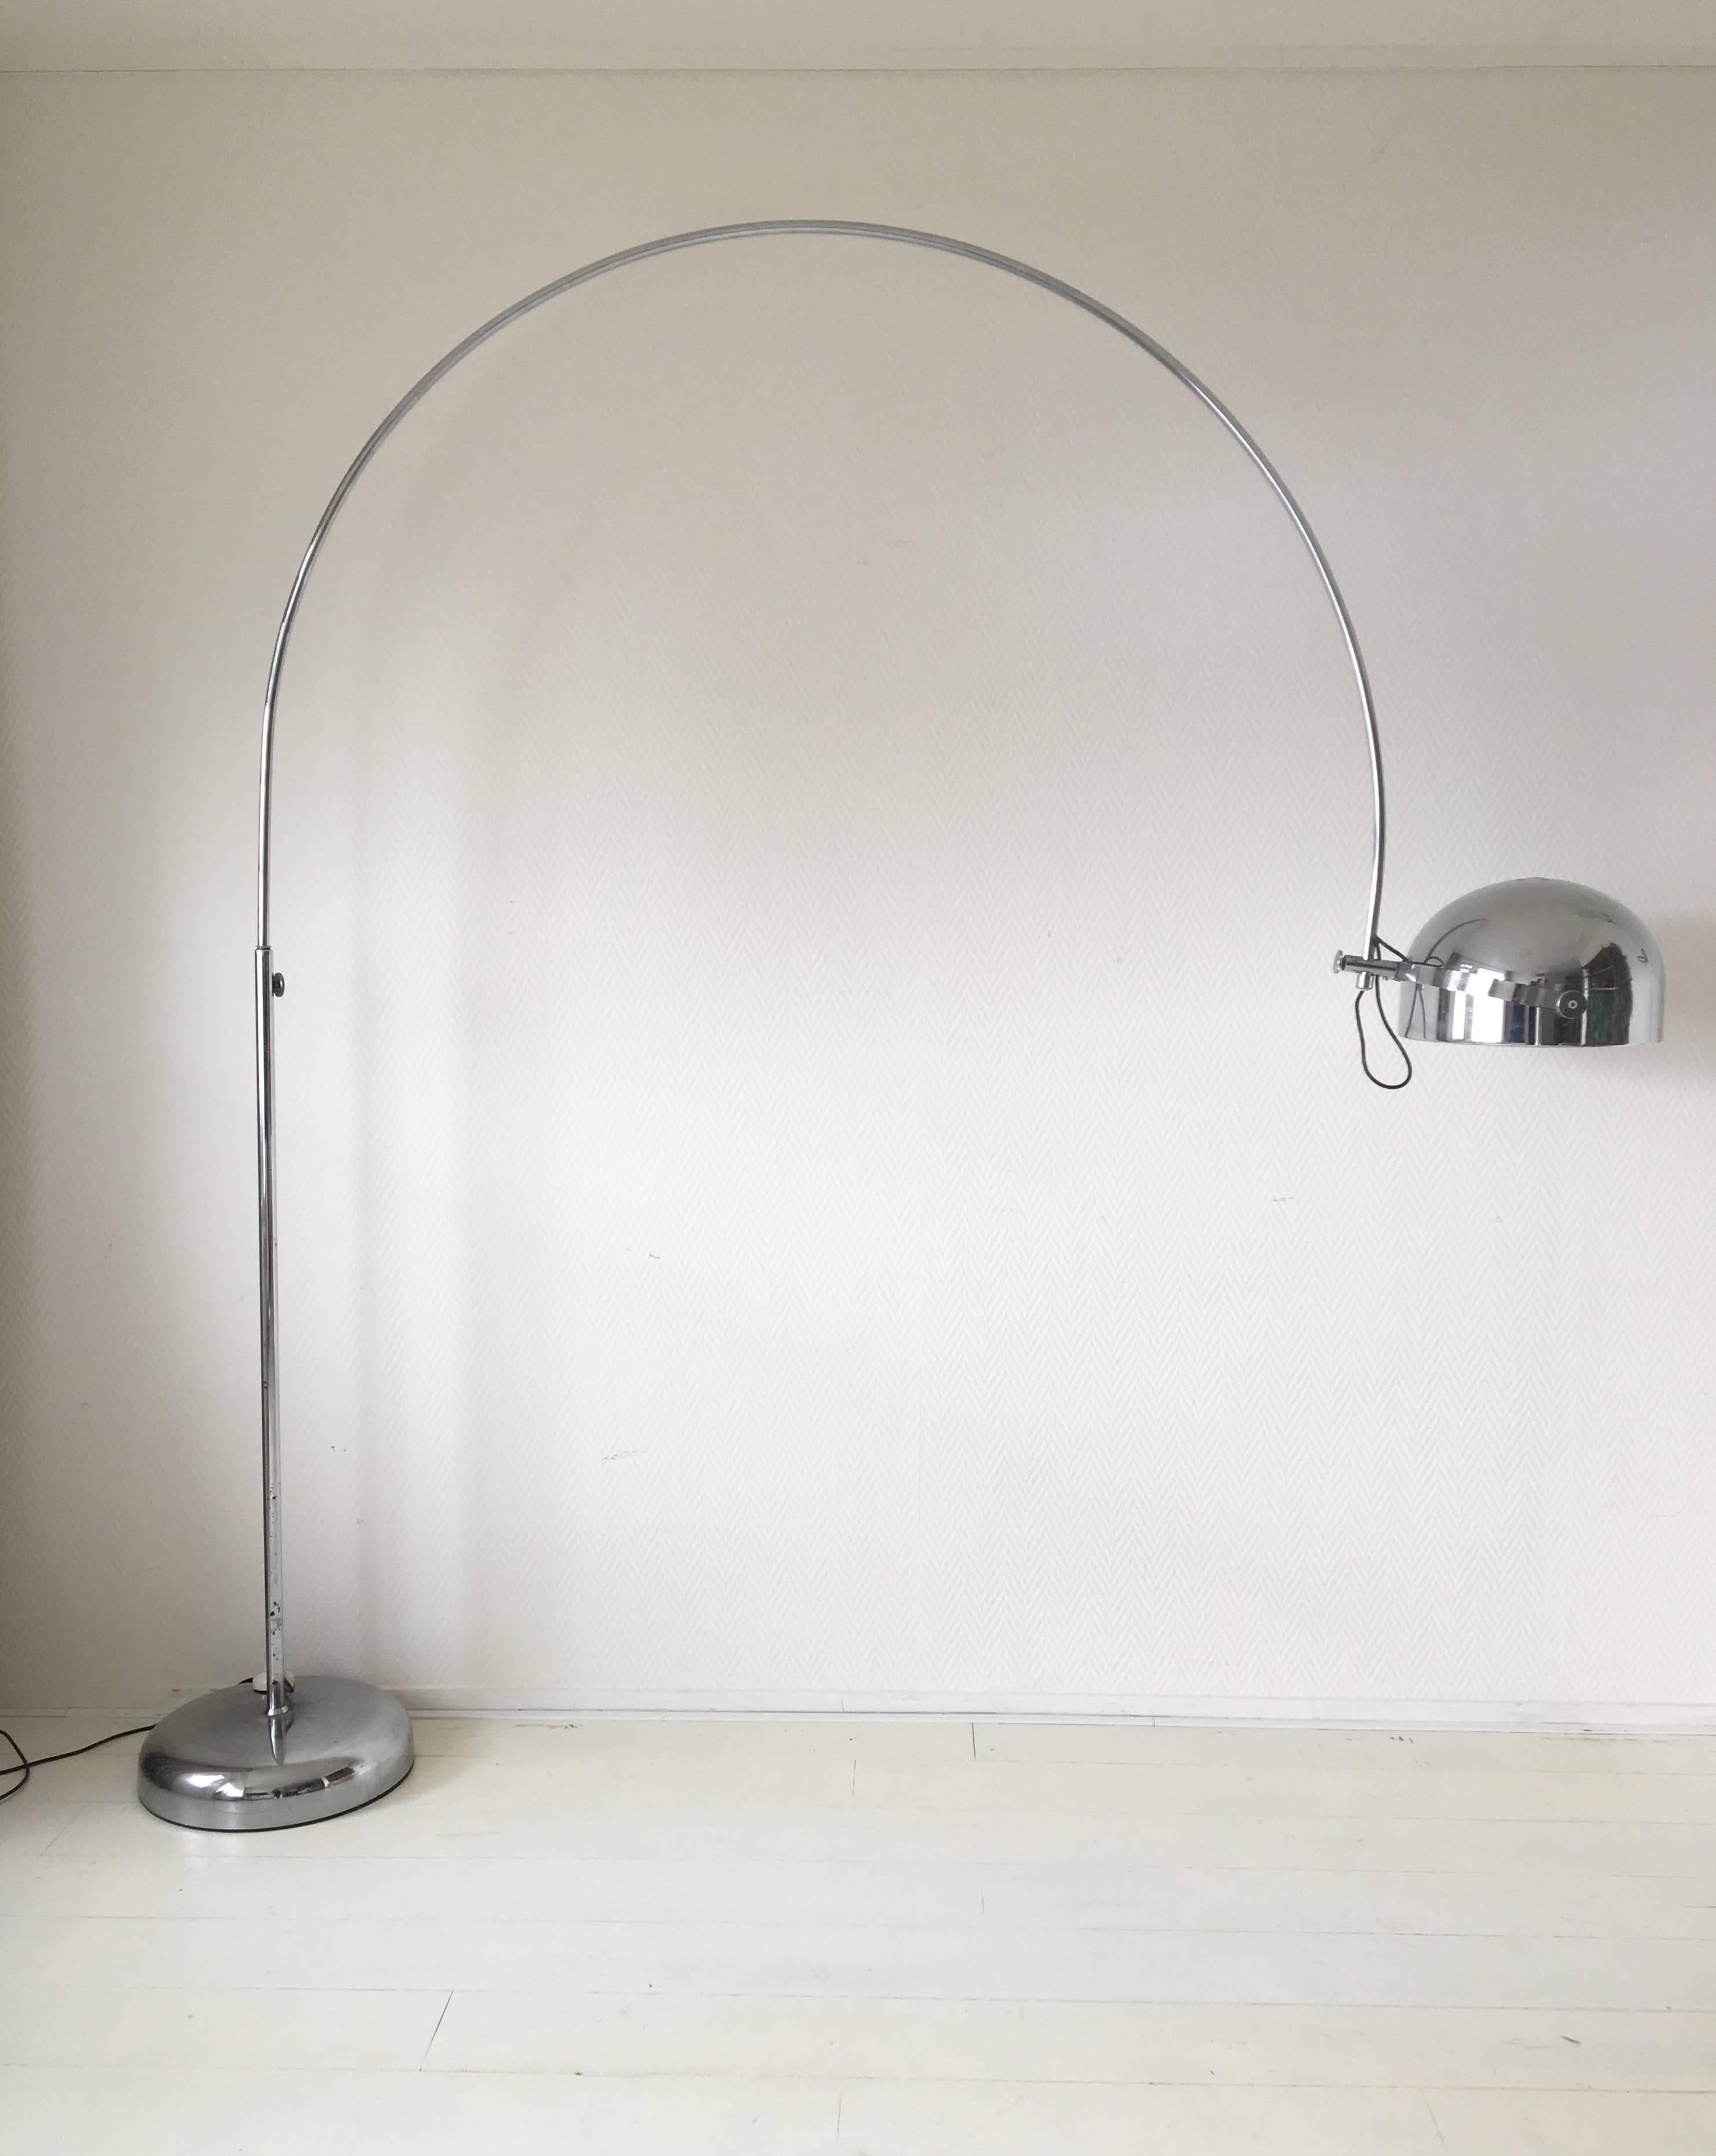 Cette grande lampe du milieu du siècle a été fabriquée par Gepo Amsterdam aux Pays-Bas, vers les années 1960. Il a probablement été conçu par les Gebroeders Posthuma. La lampe est dotée d'une lourde base en métal chromé qui peut être tournée à 360